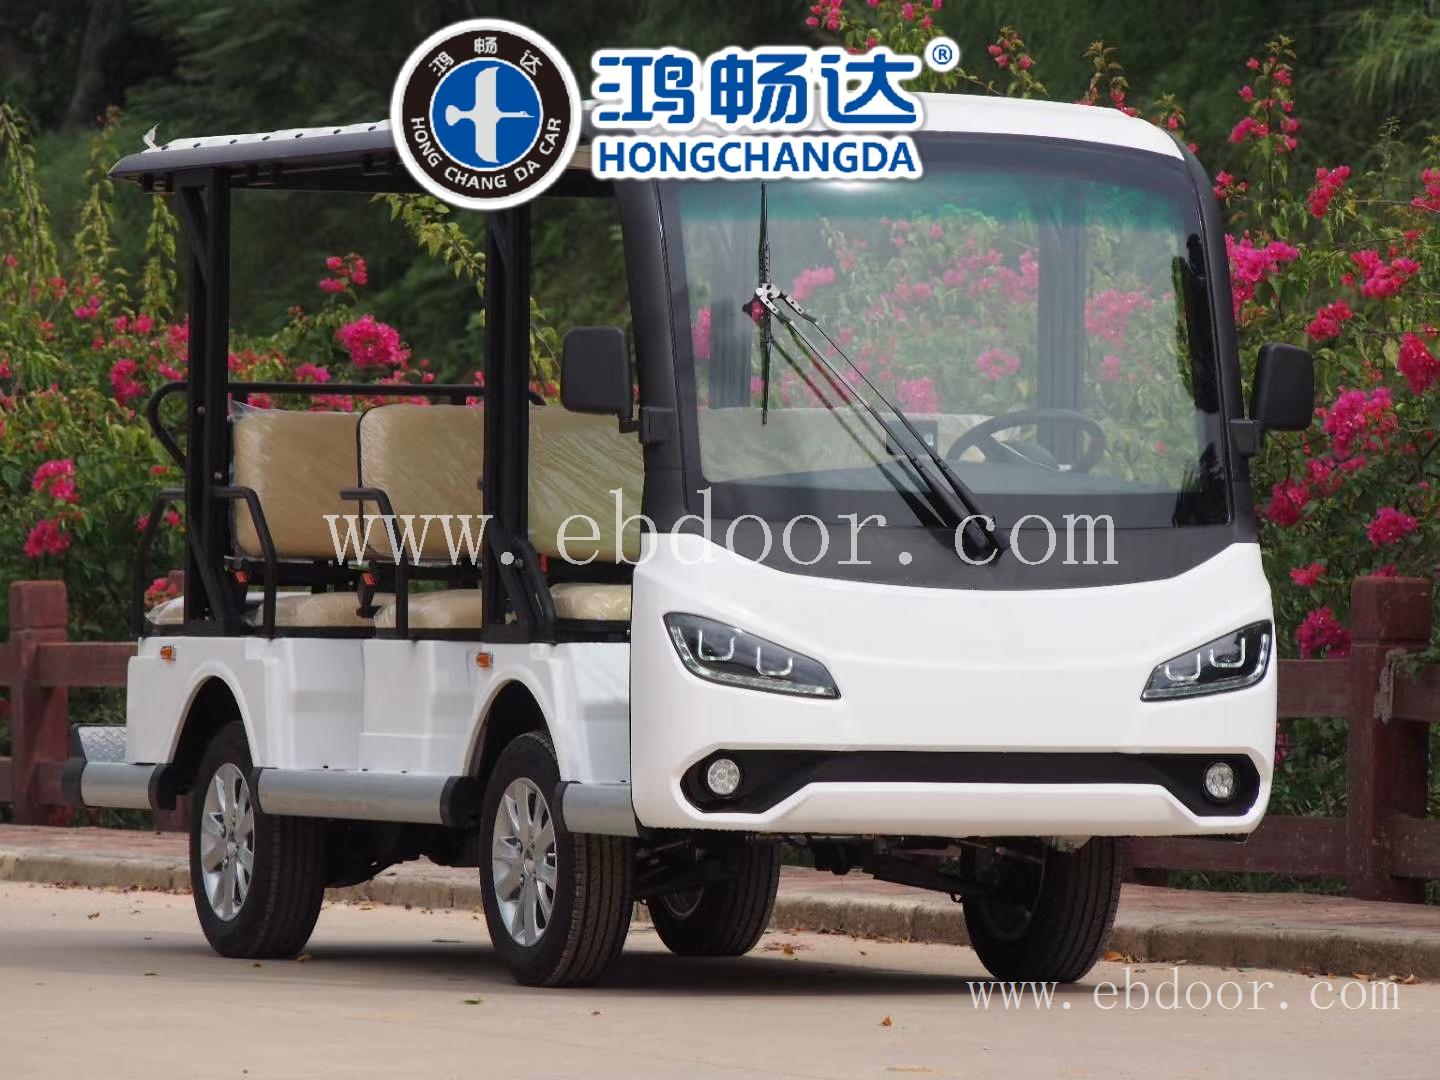 广东鸿畅 电动观光车 11座 白色 休闲款式 质量保证售后到家